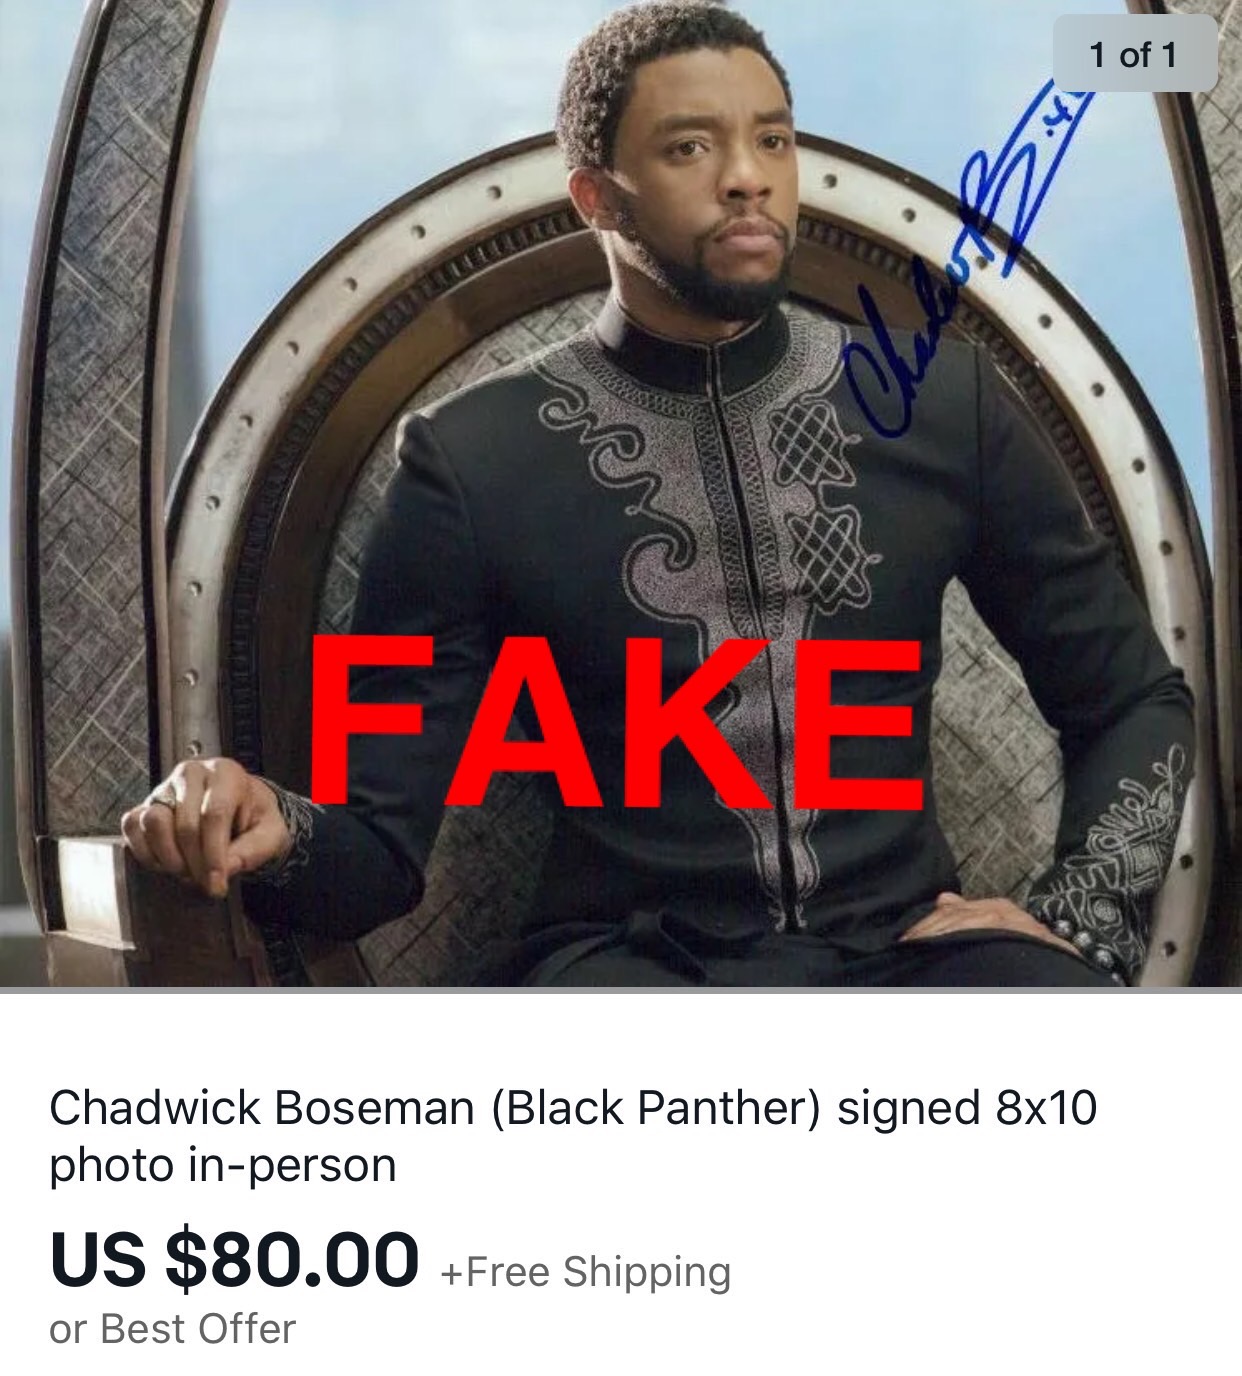 Chadwick fake autograph